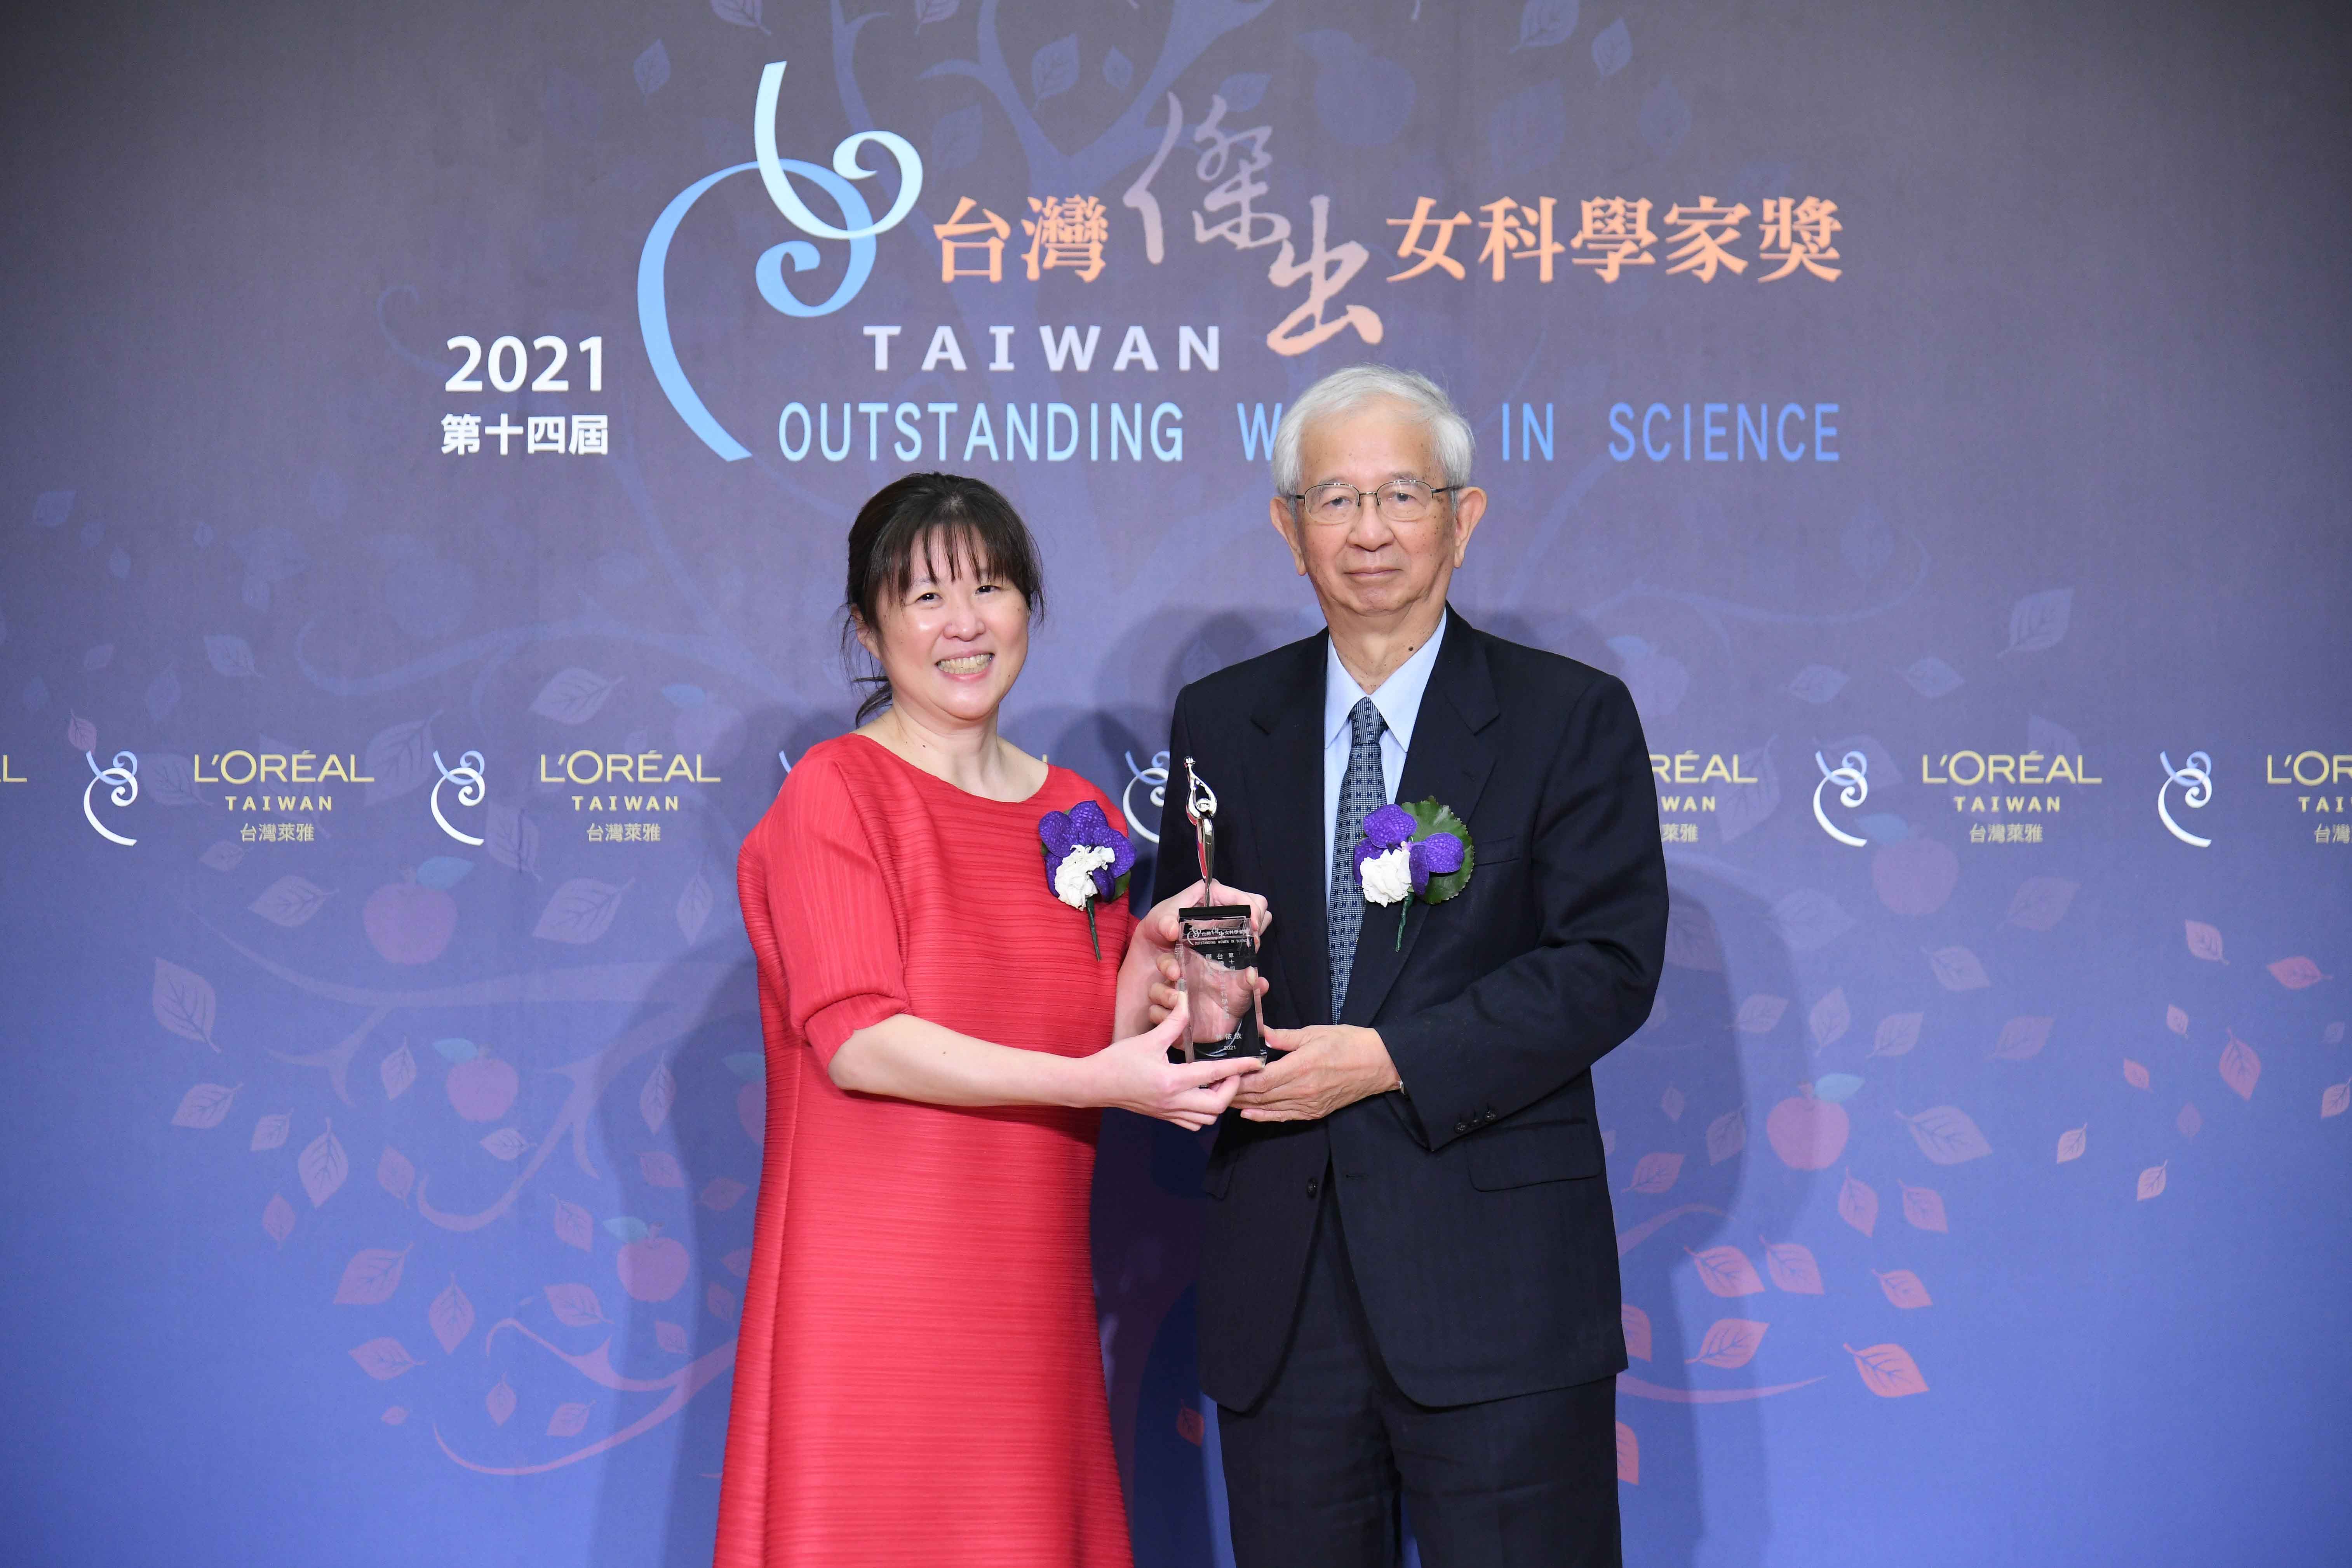 【榮譽】 賀 本系林依依老師榮獲第14屆(2021)台灣傑出女科學家獎